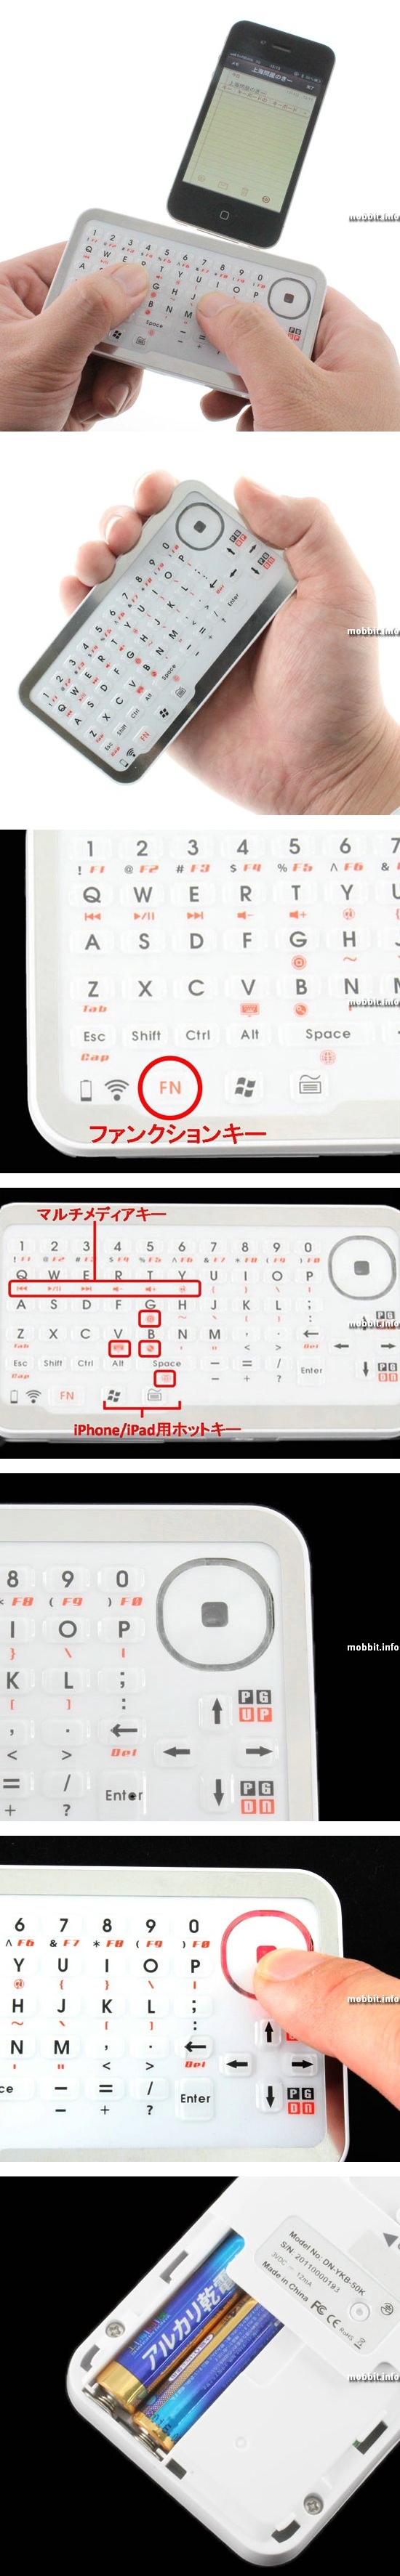 Крохотная Bluetooth-клавиатура Donya